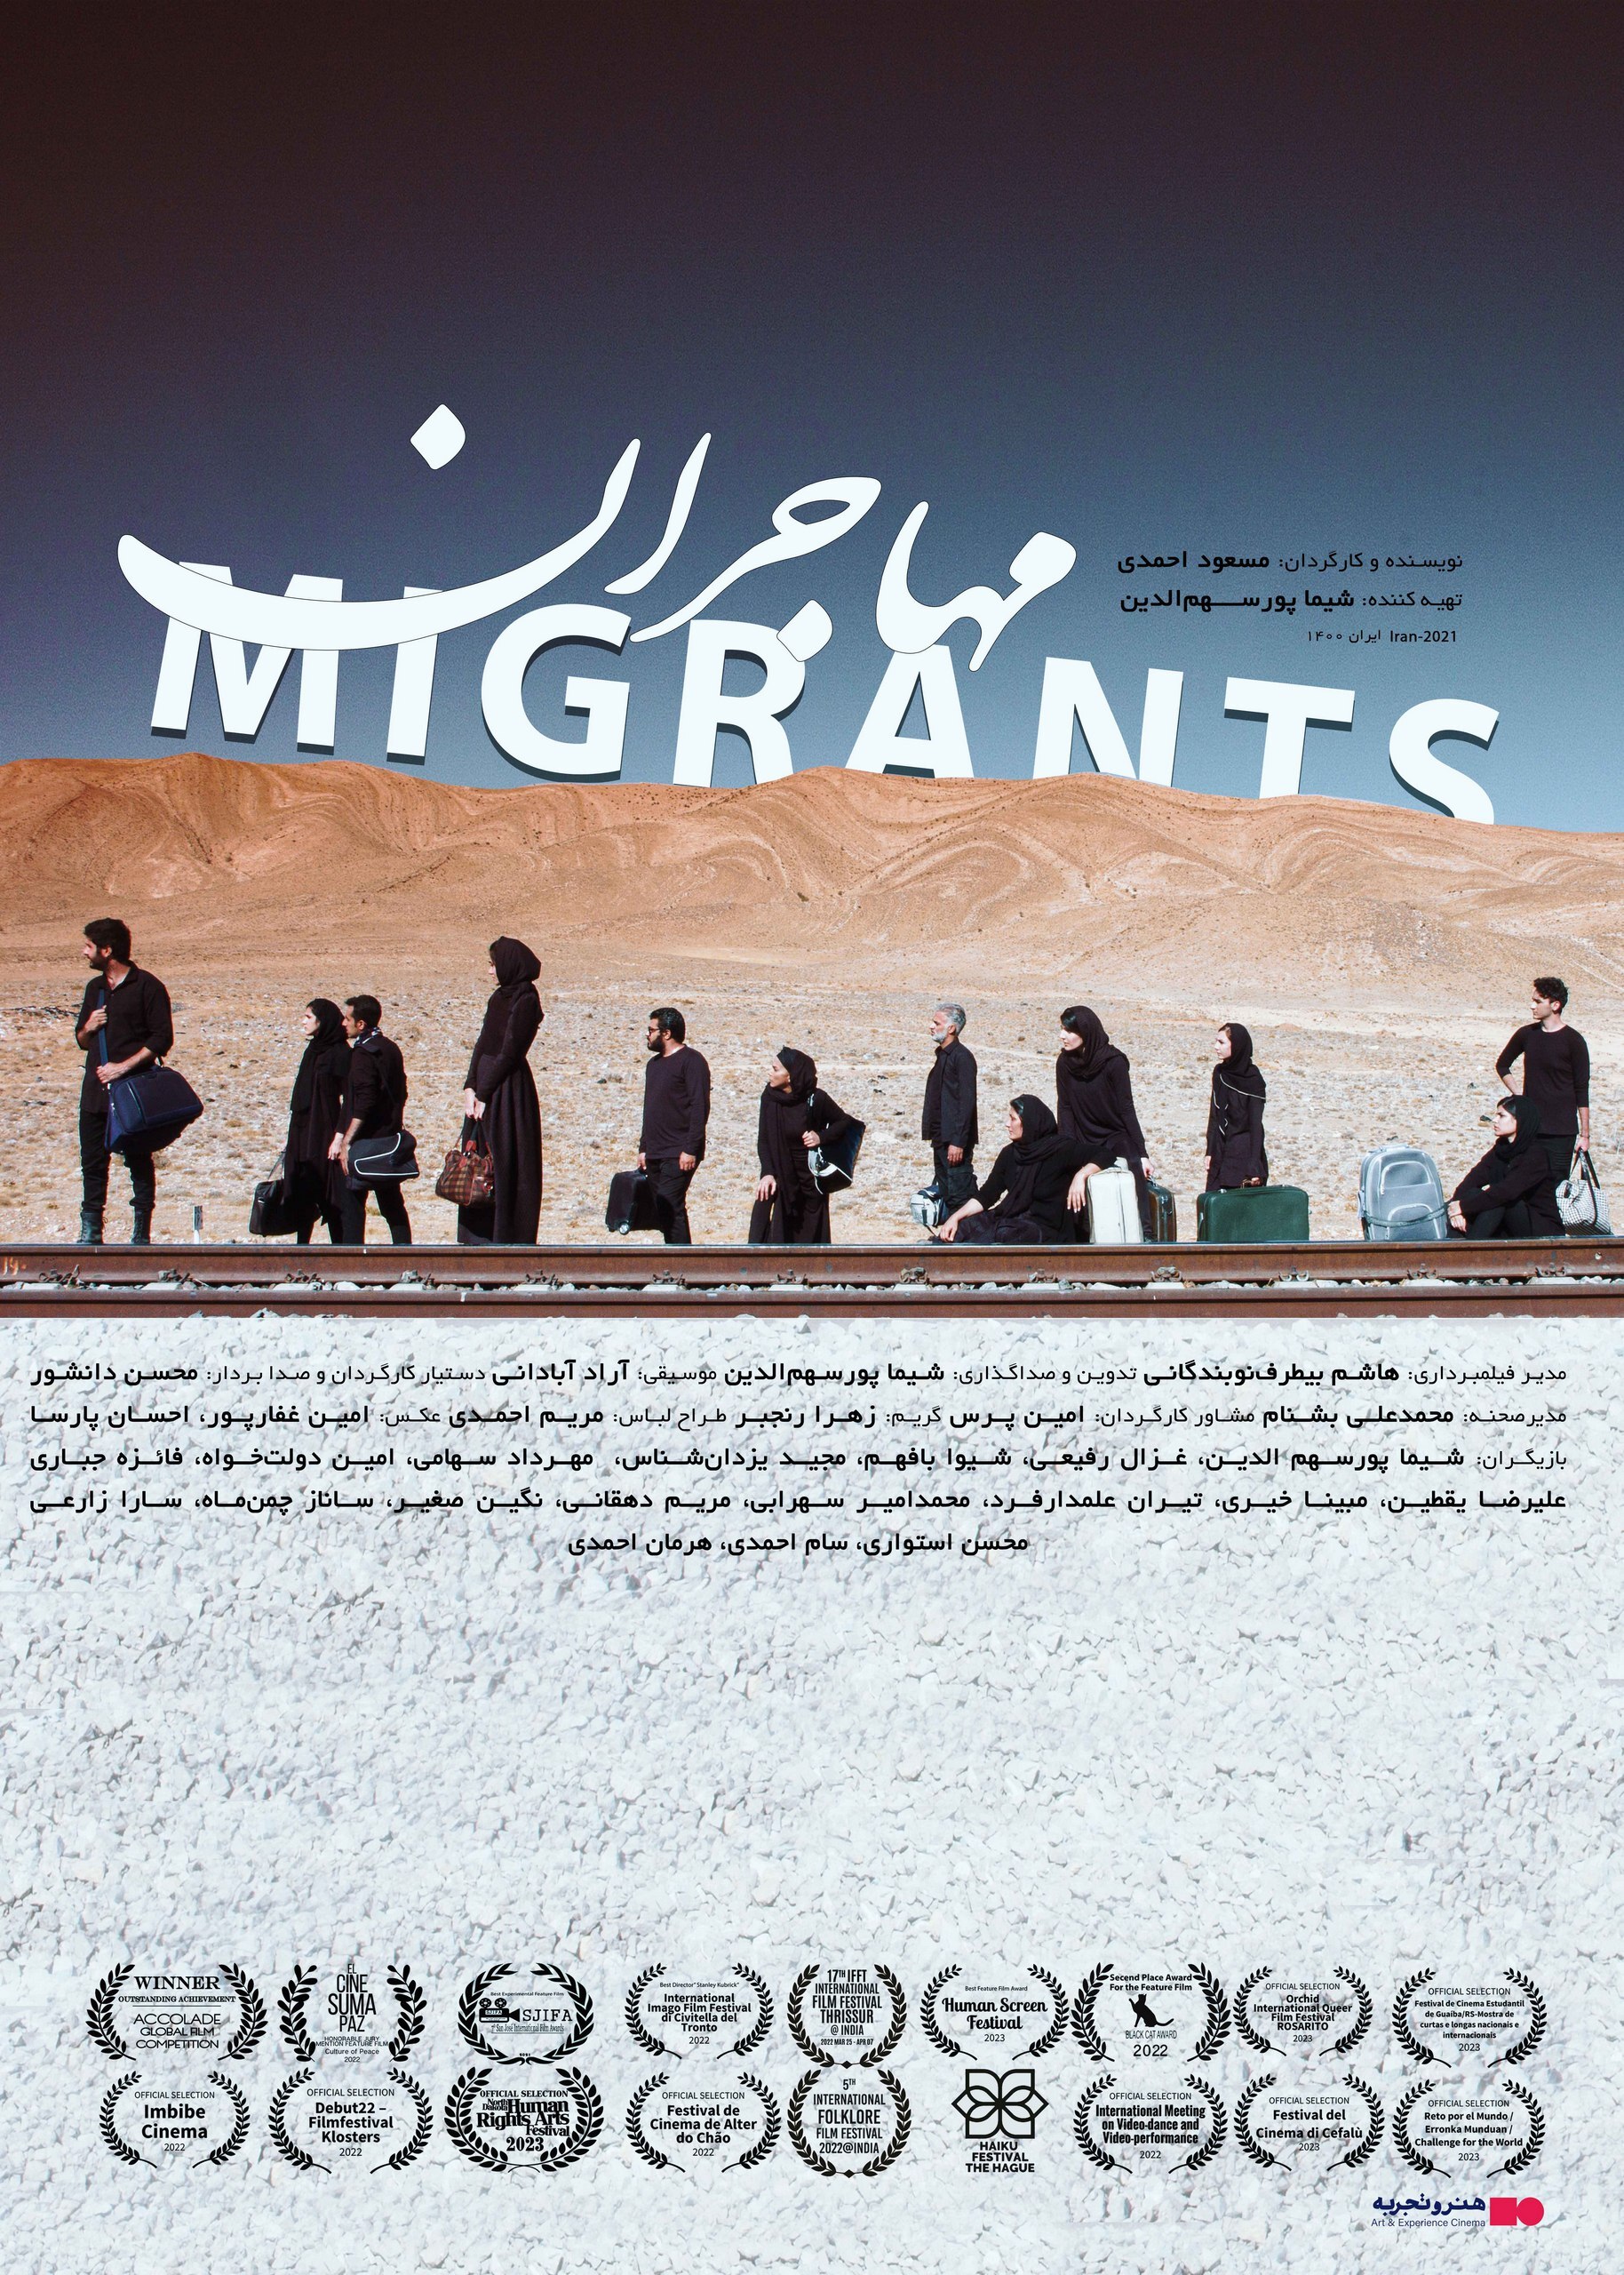 اکران فیلم «مهاجران» از ۳۱ خرداد در هنر و تجربه/ رونمایی از پوستر